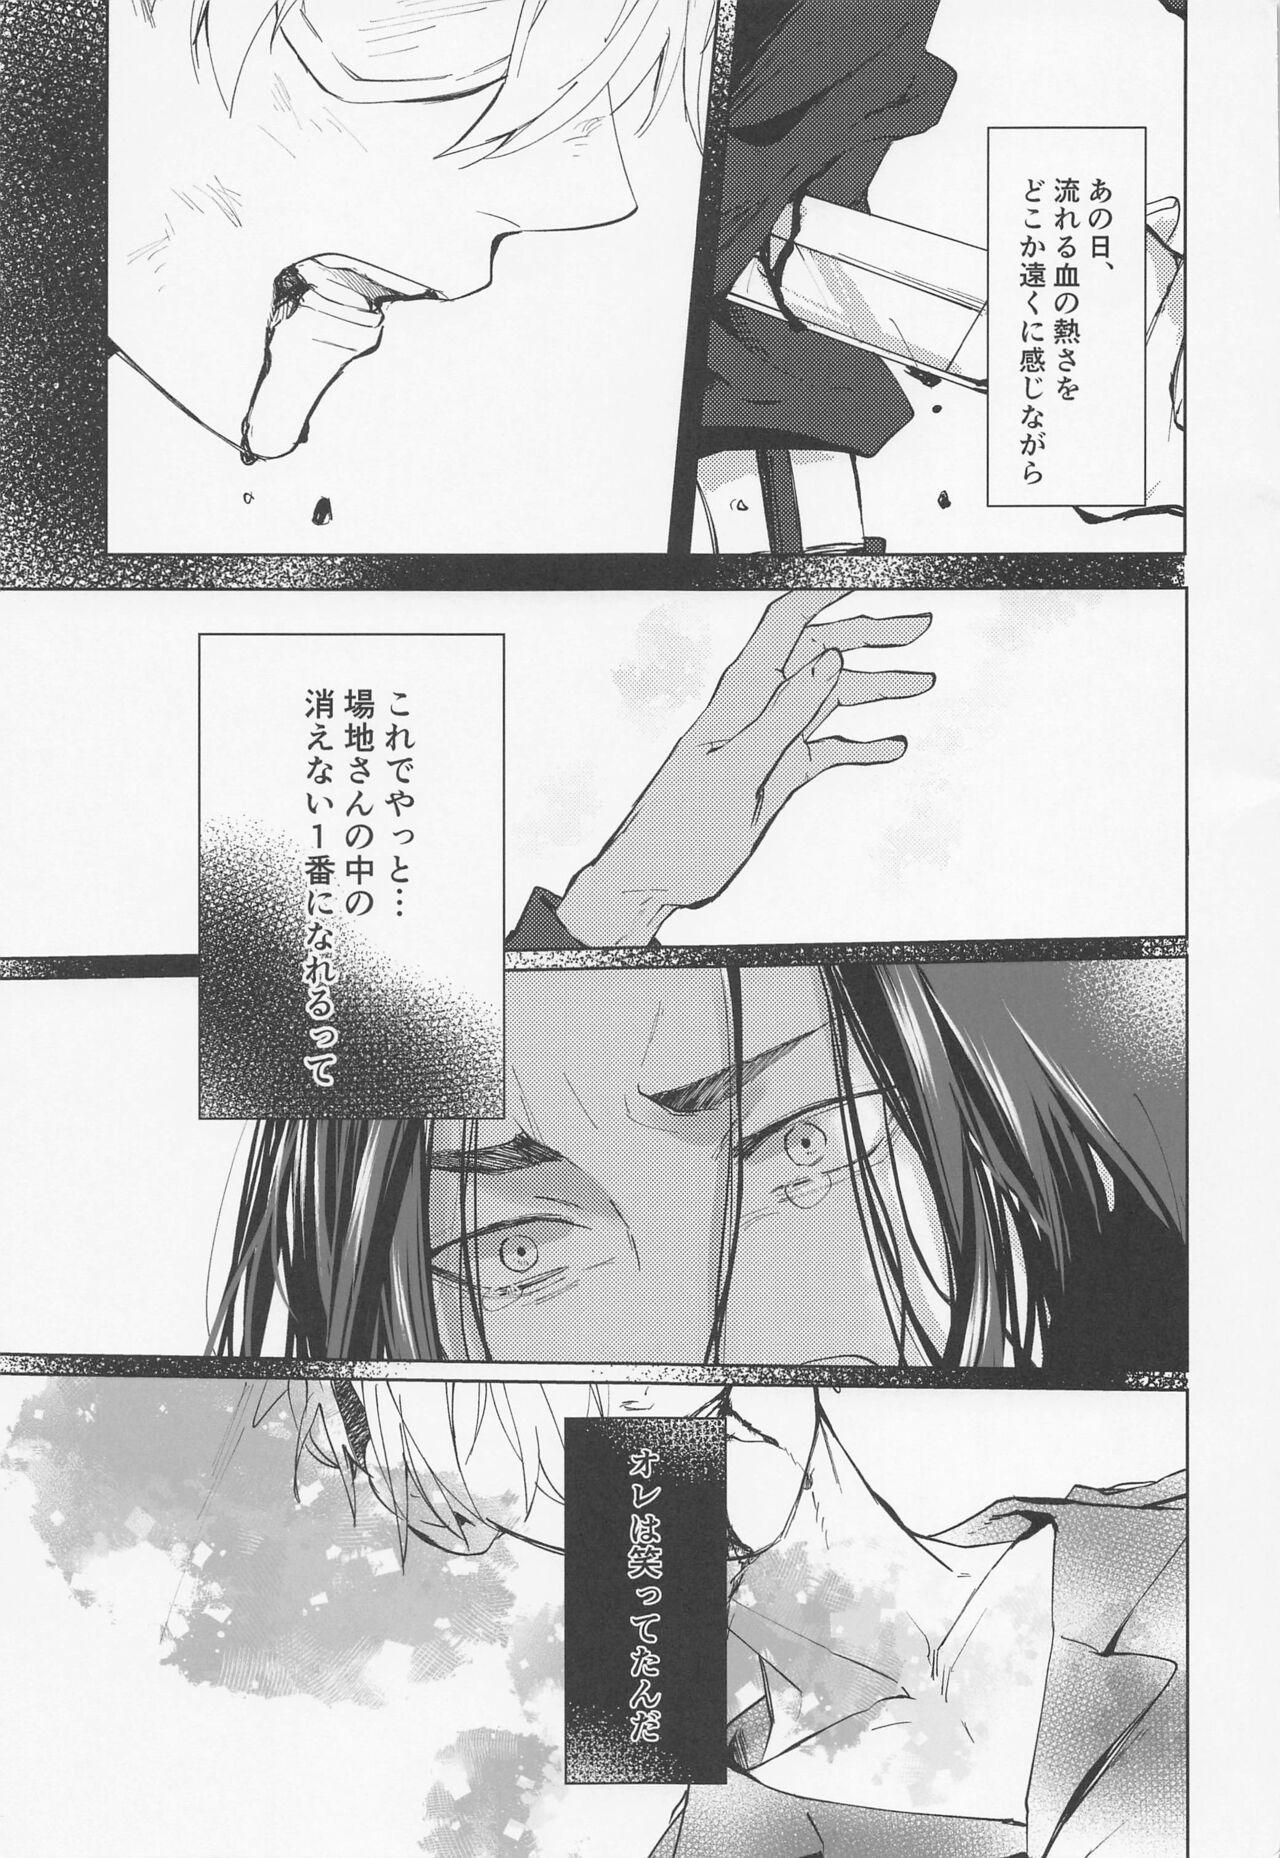 Tats Kurushikute dou Shiyou mo naku Itooshii - Tokyo revengers Boy - Page 4